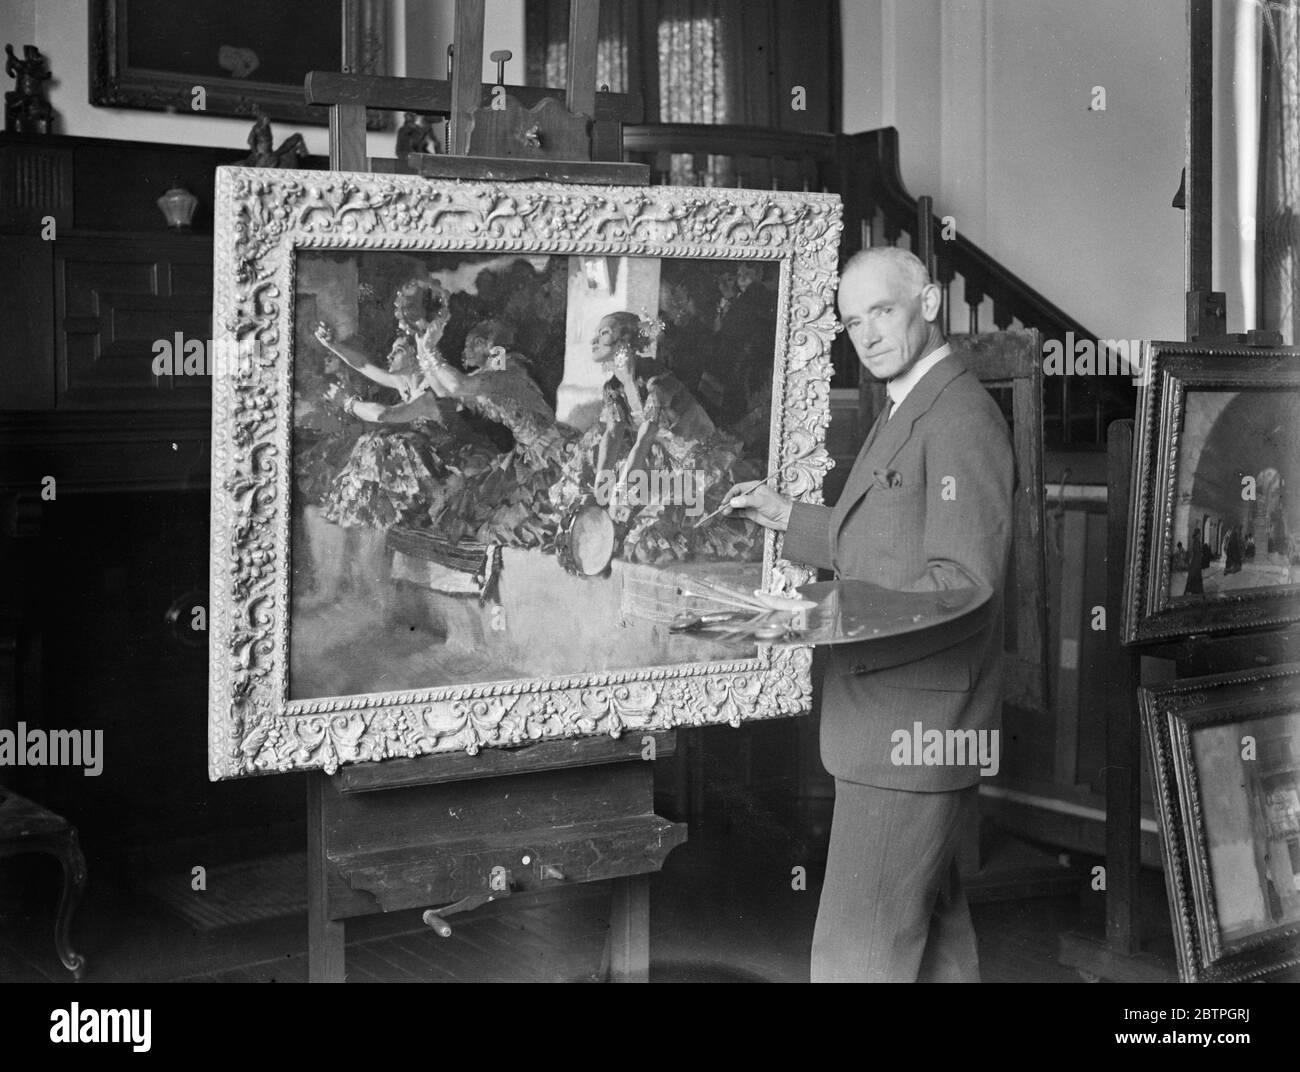 Für die Royal Academy . Herr W. Russell Flint R A, der seinen Bildausschnitt "Gitana Music", einen Undulusian Beauty Chorus, der in diesem Jahr an die Royal Academy geschickt wird, ausarbeitet. 23 März 1932 Stockfoto